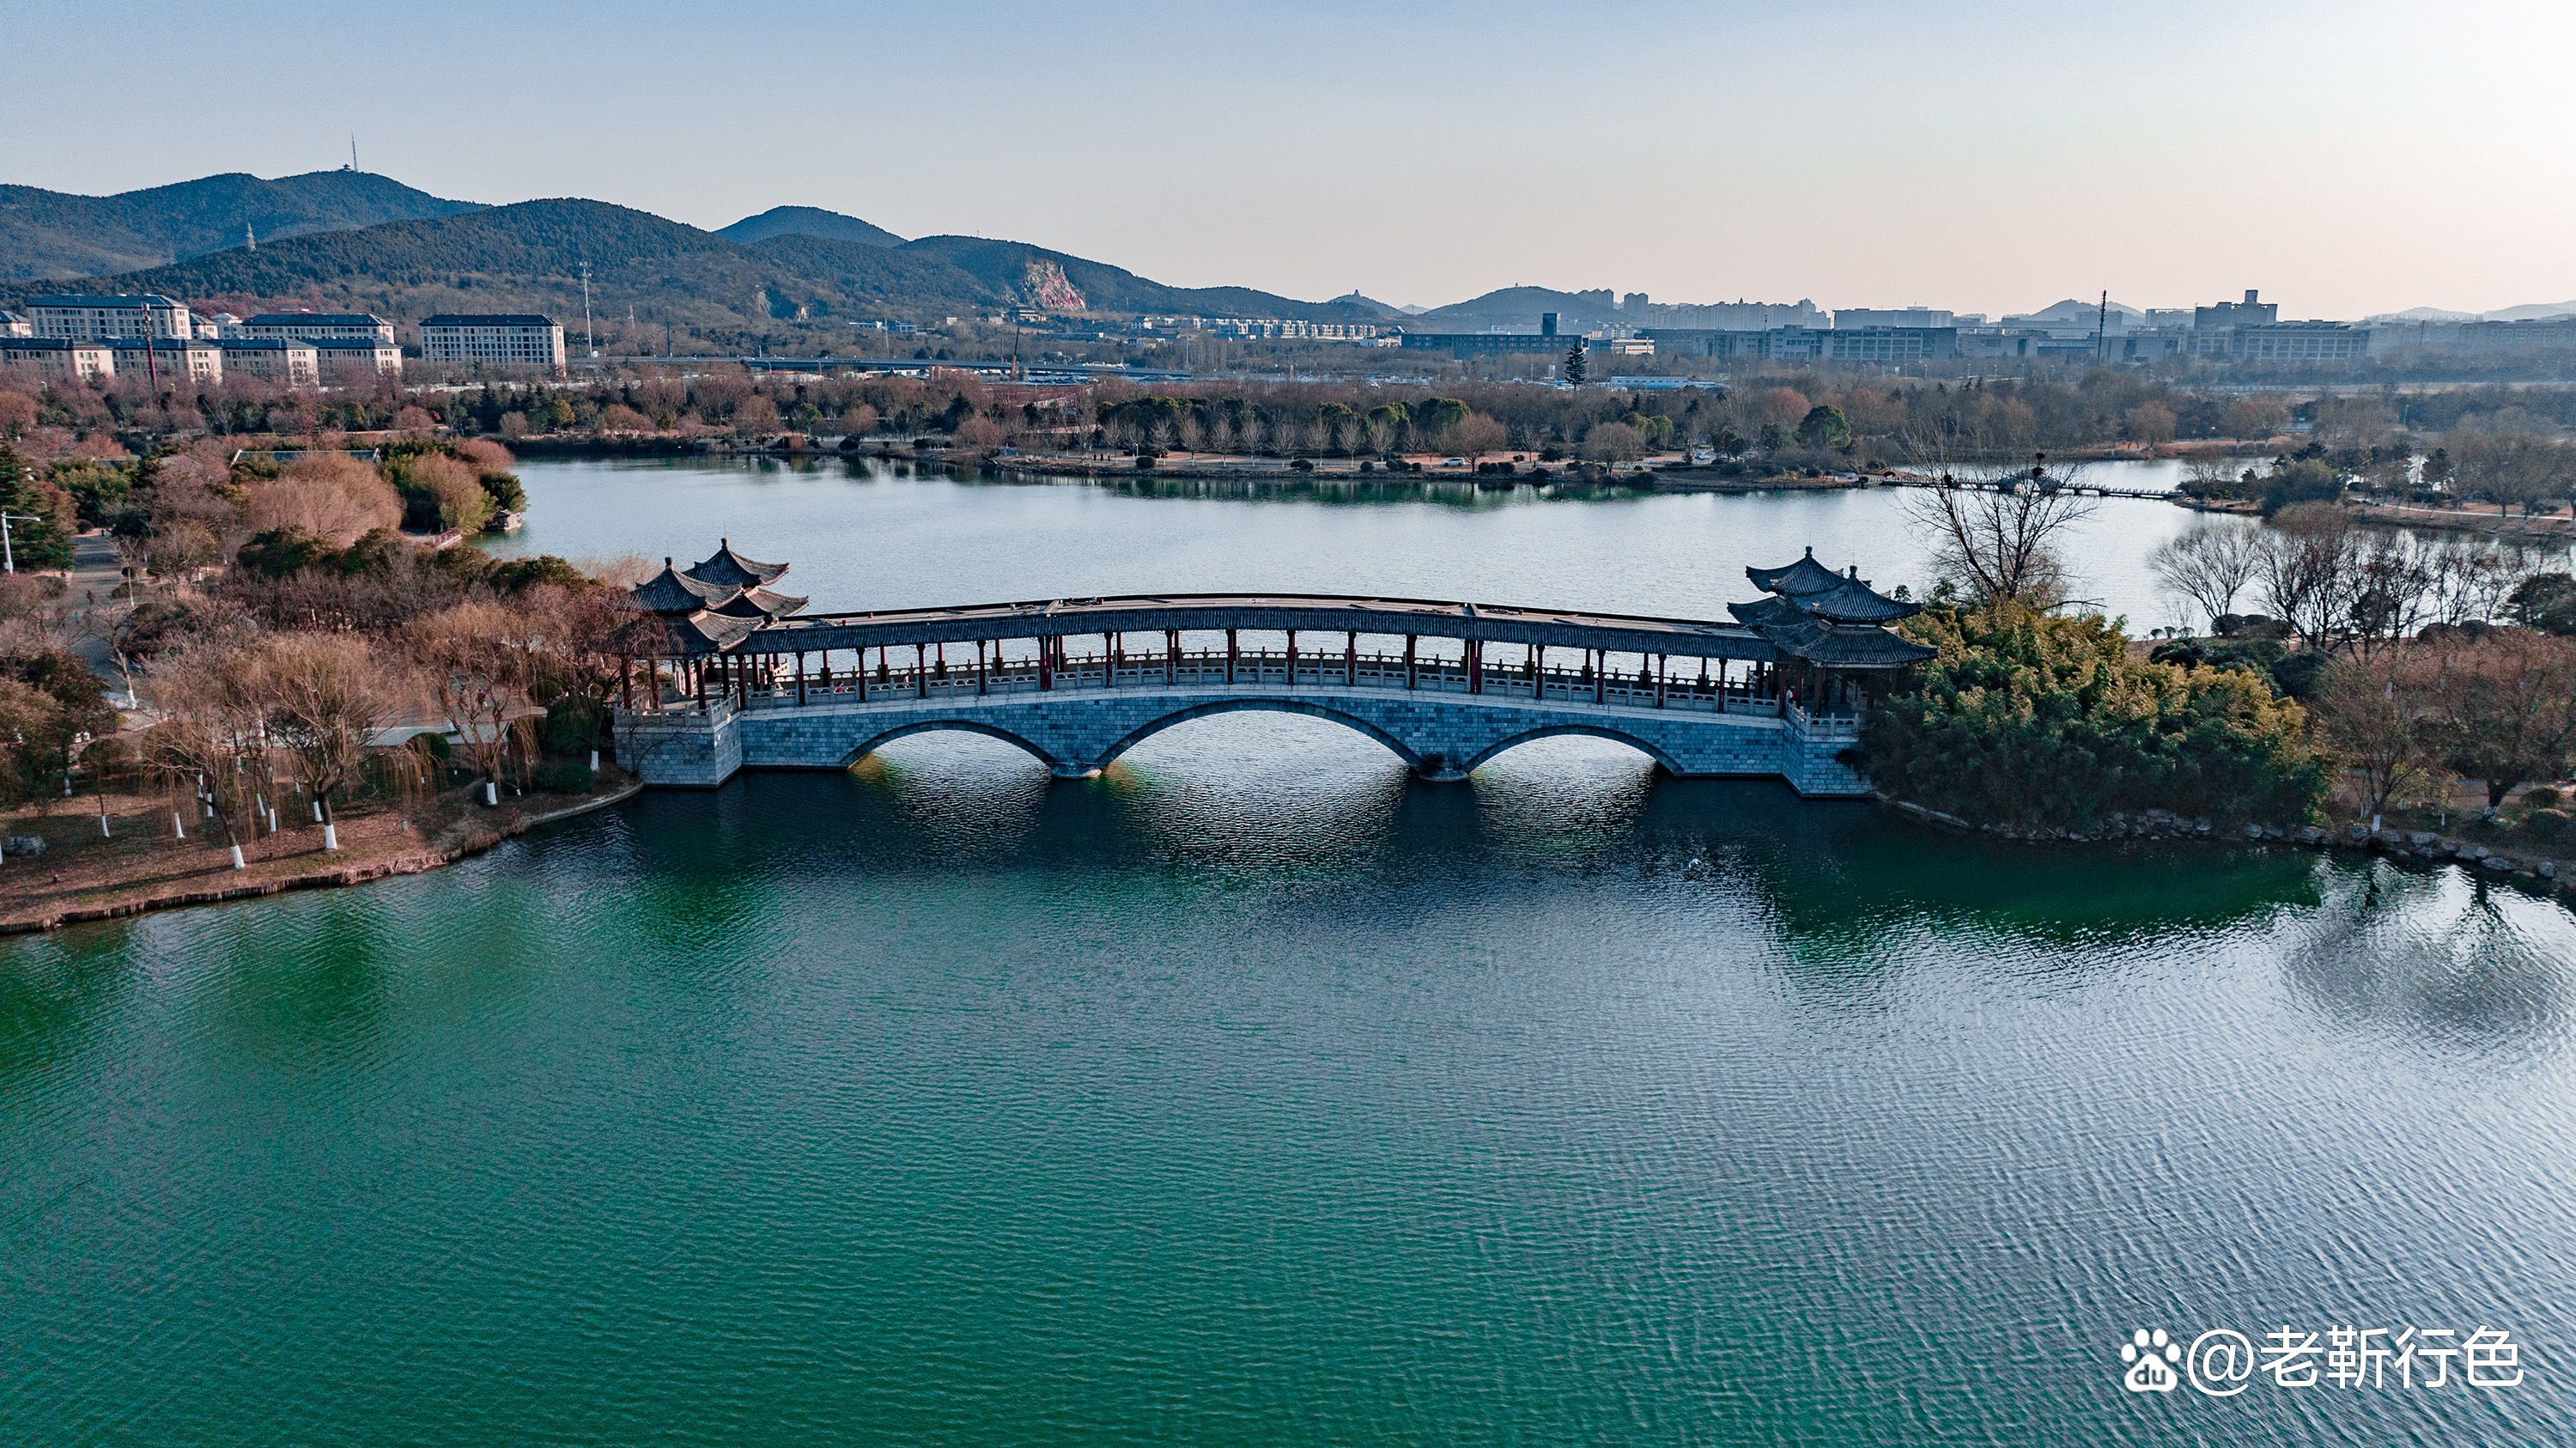 徐州云龙湖不只有山水还有建筑之美盘点一下小南湖上的桥